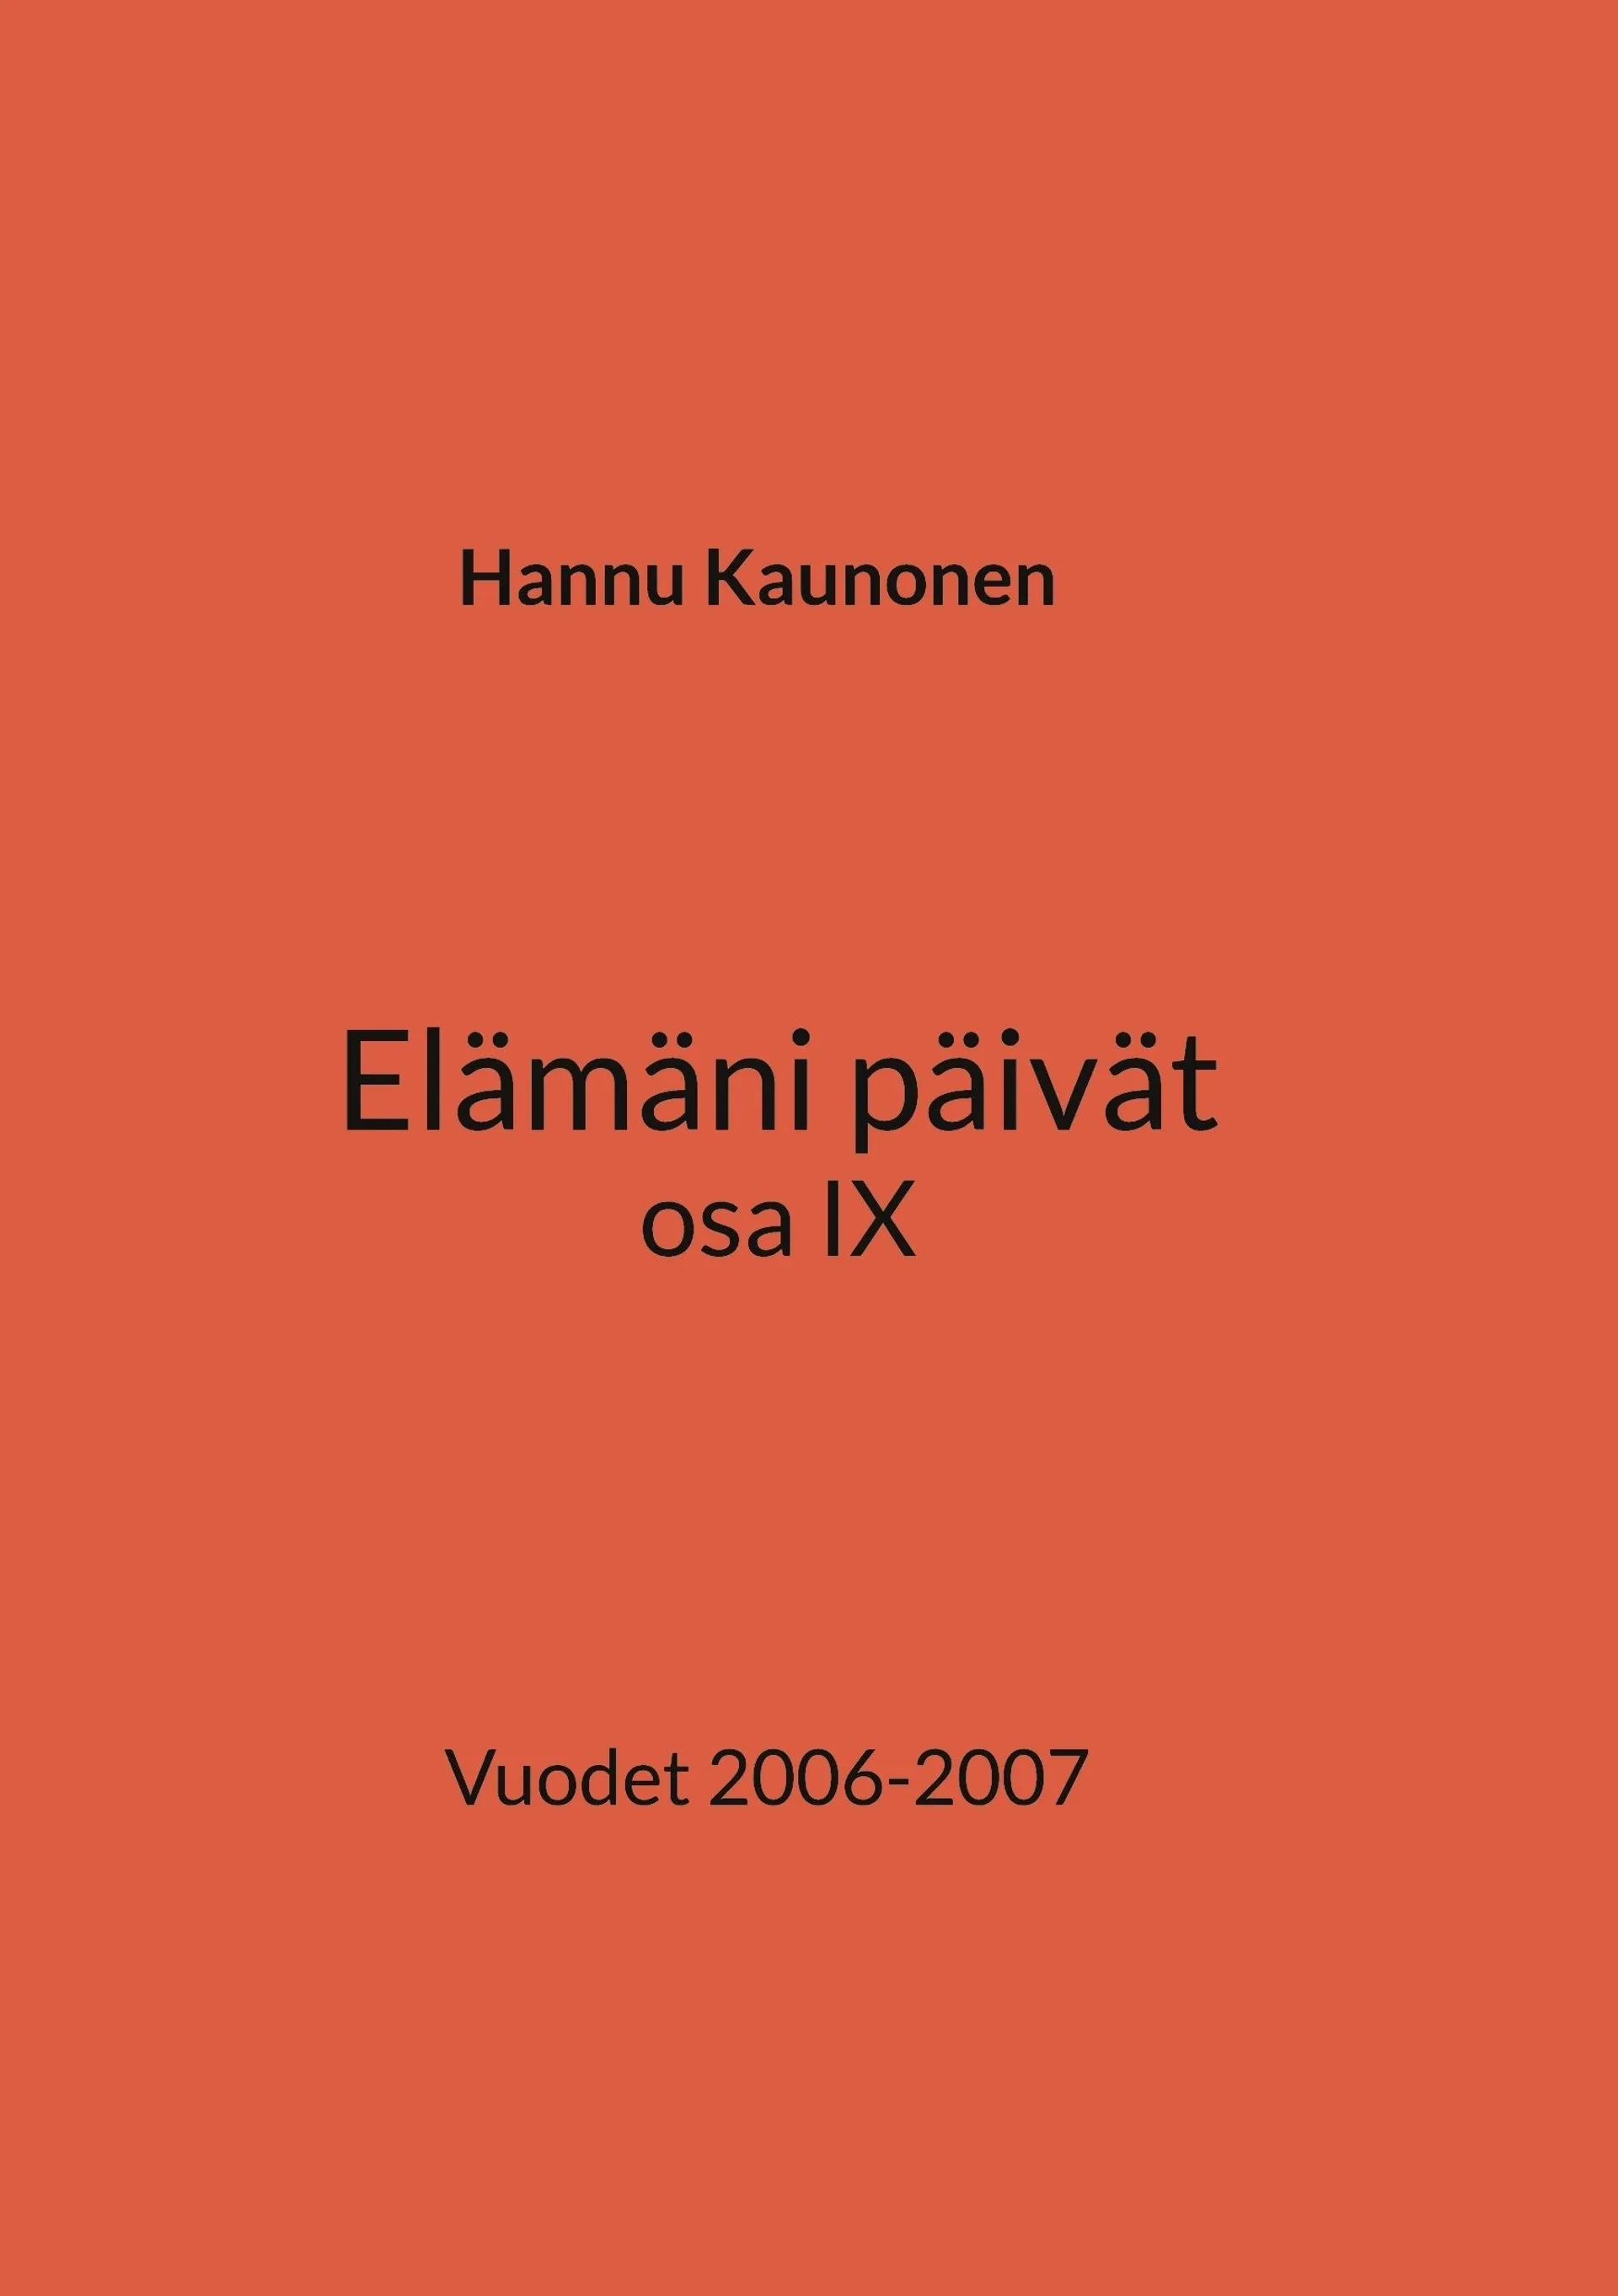 Kaunonen, Elämäni päivät osa IX - Vuodet 2006-2007